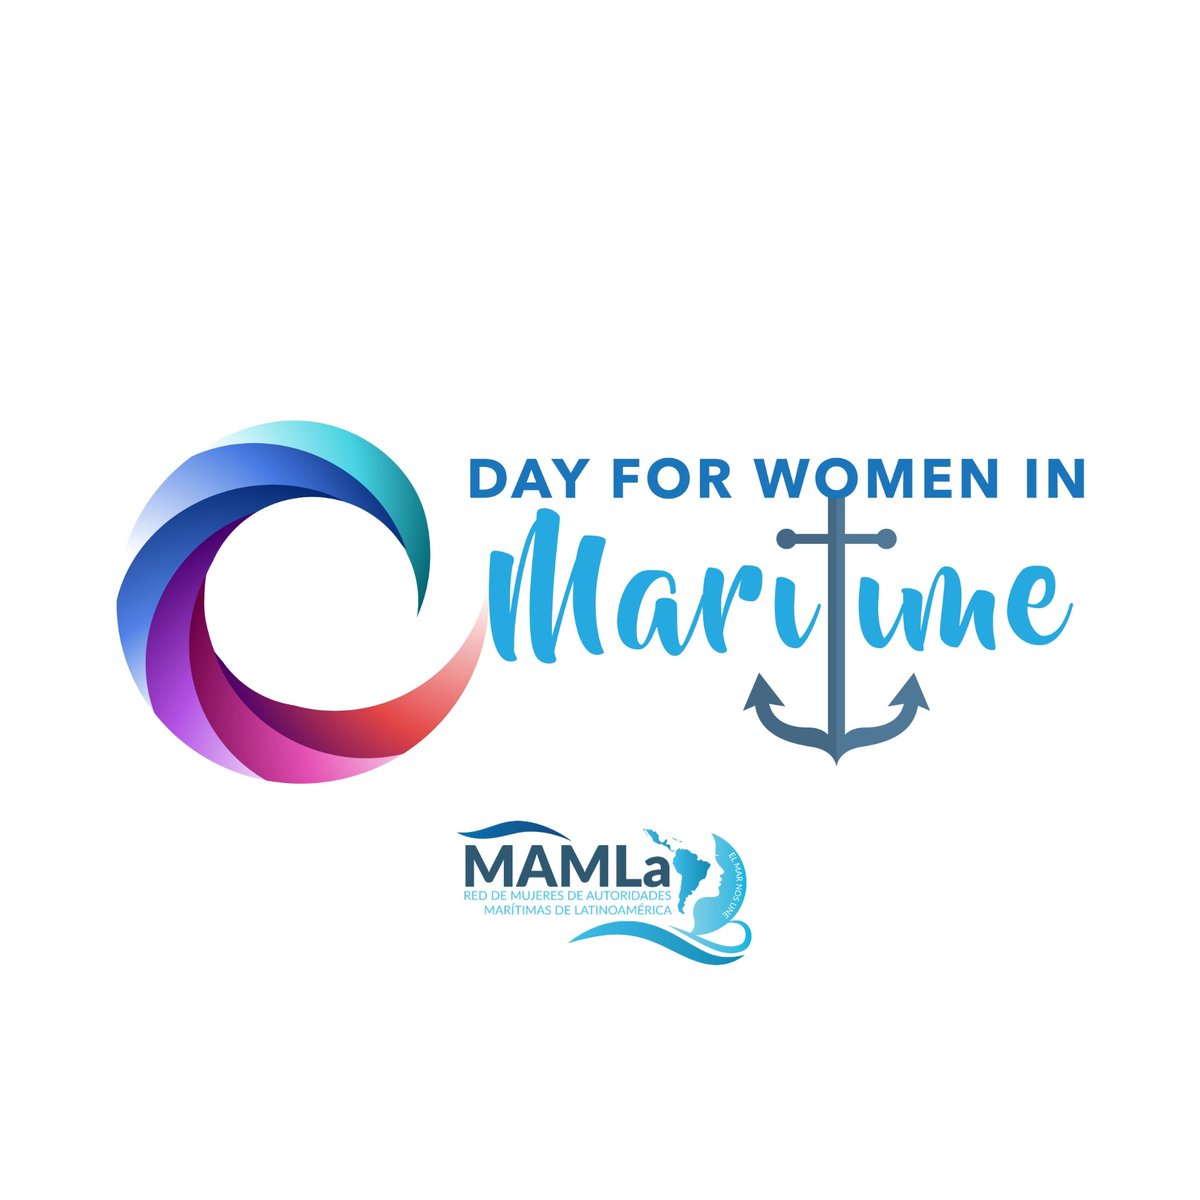 Hoy 18 de mayo, celebramos el Día de la Mujer en el Sector Marítimo, una iniciativa del Pacífico. Gracias @IMOHQ por todo el apoyo.
El logo representa en los 6 trazos de la ola a las 6 Asociaciones de mujeres de la OMI: AWIMA, WIMA Asia, WiMAC, @WOMESAHQ, @PacWIMA y @RedMAMLa